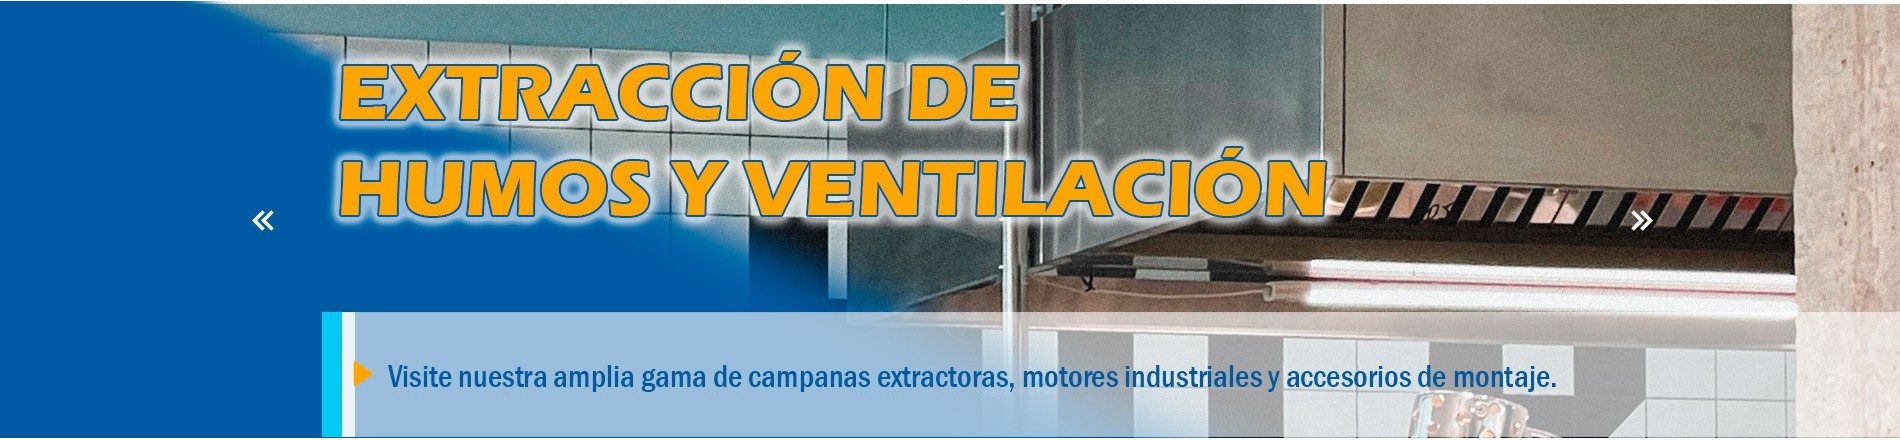 Campanas Extractoras / Ventilación